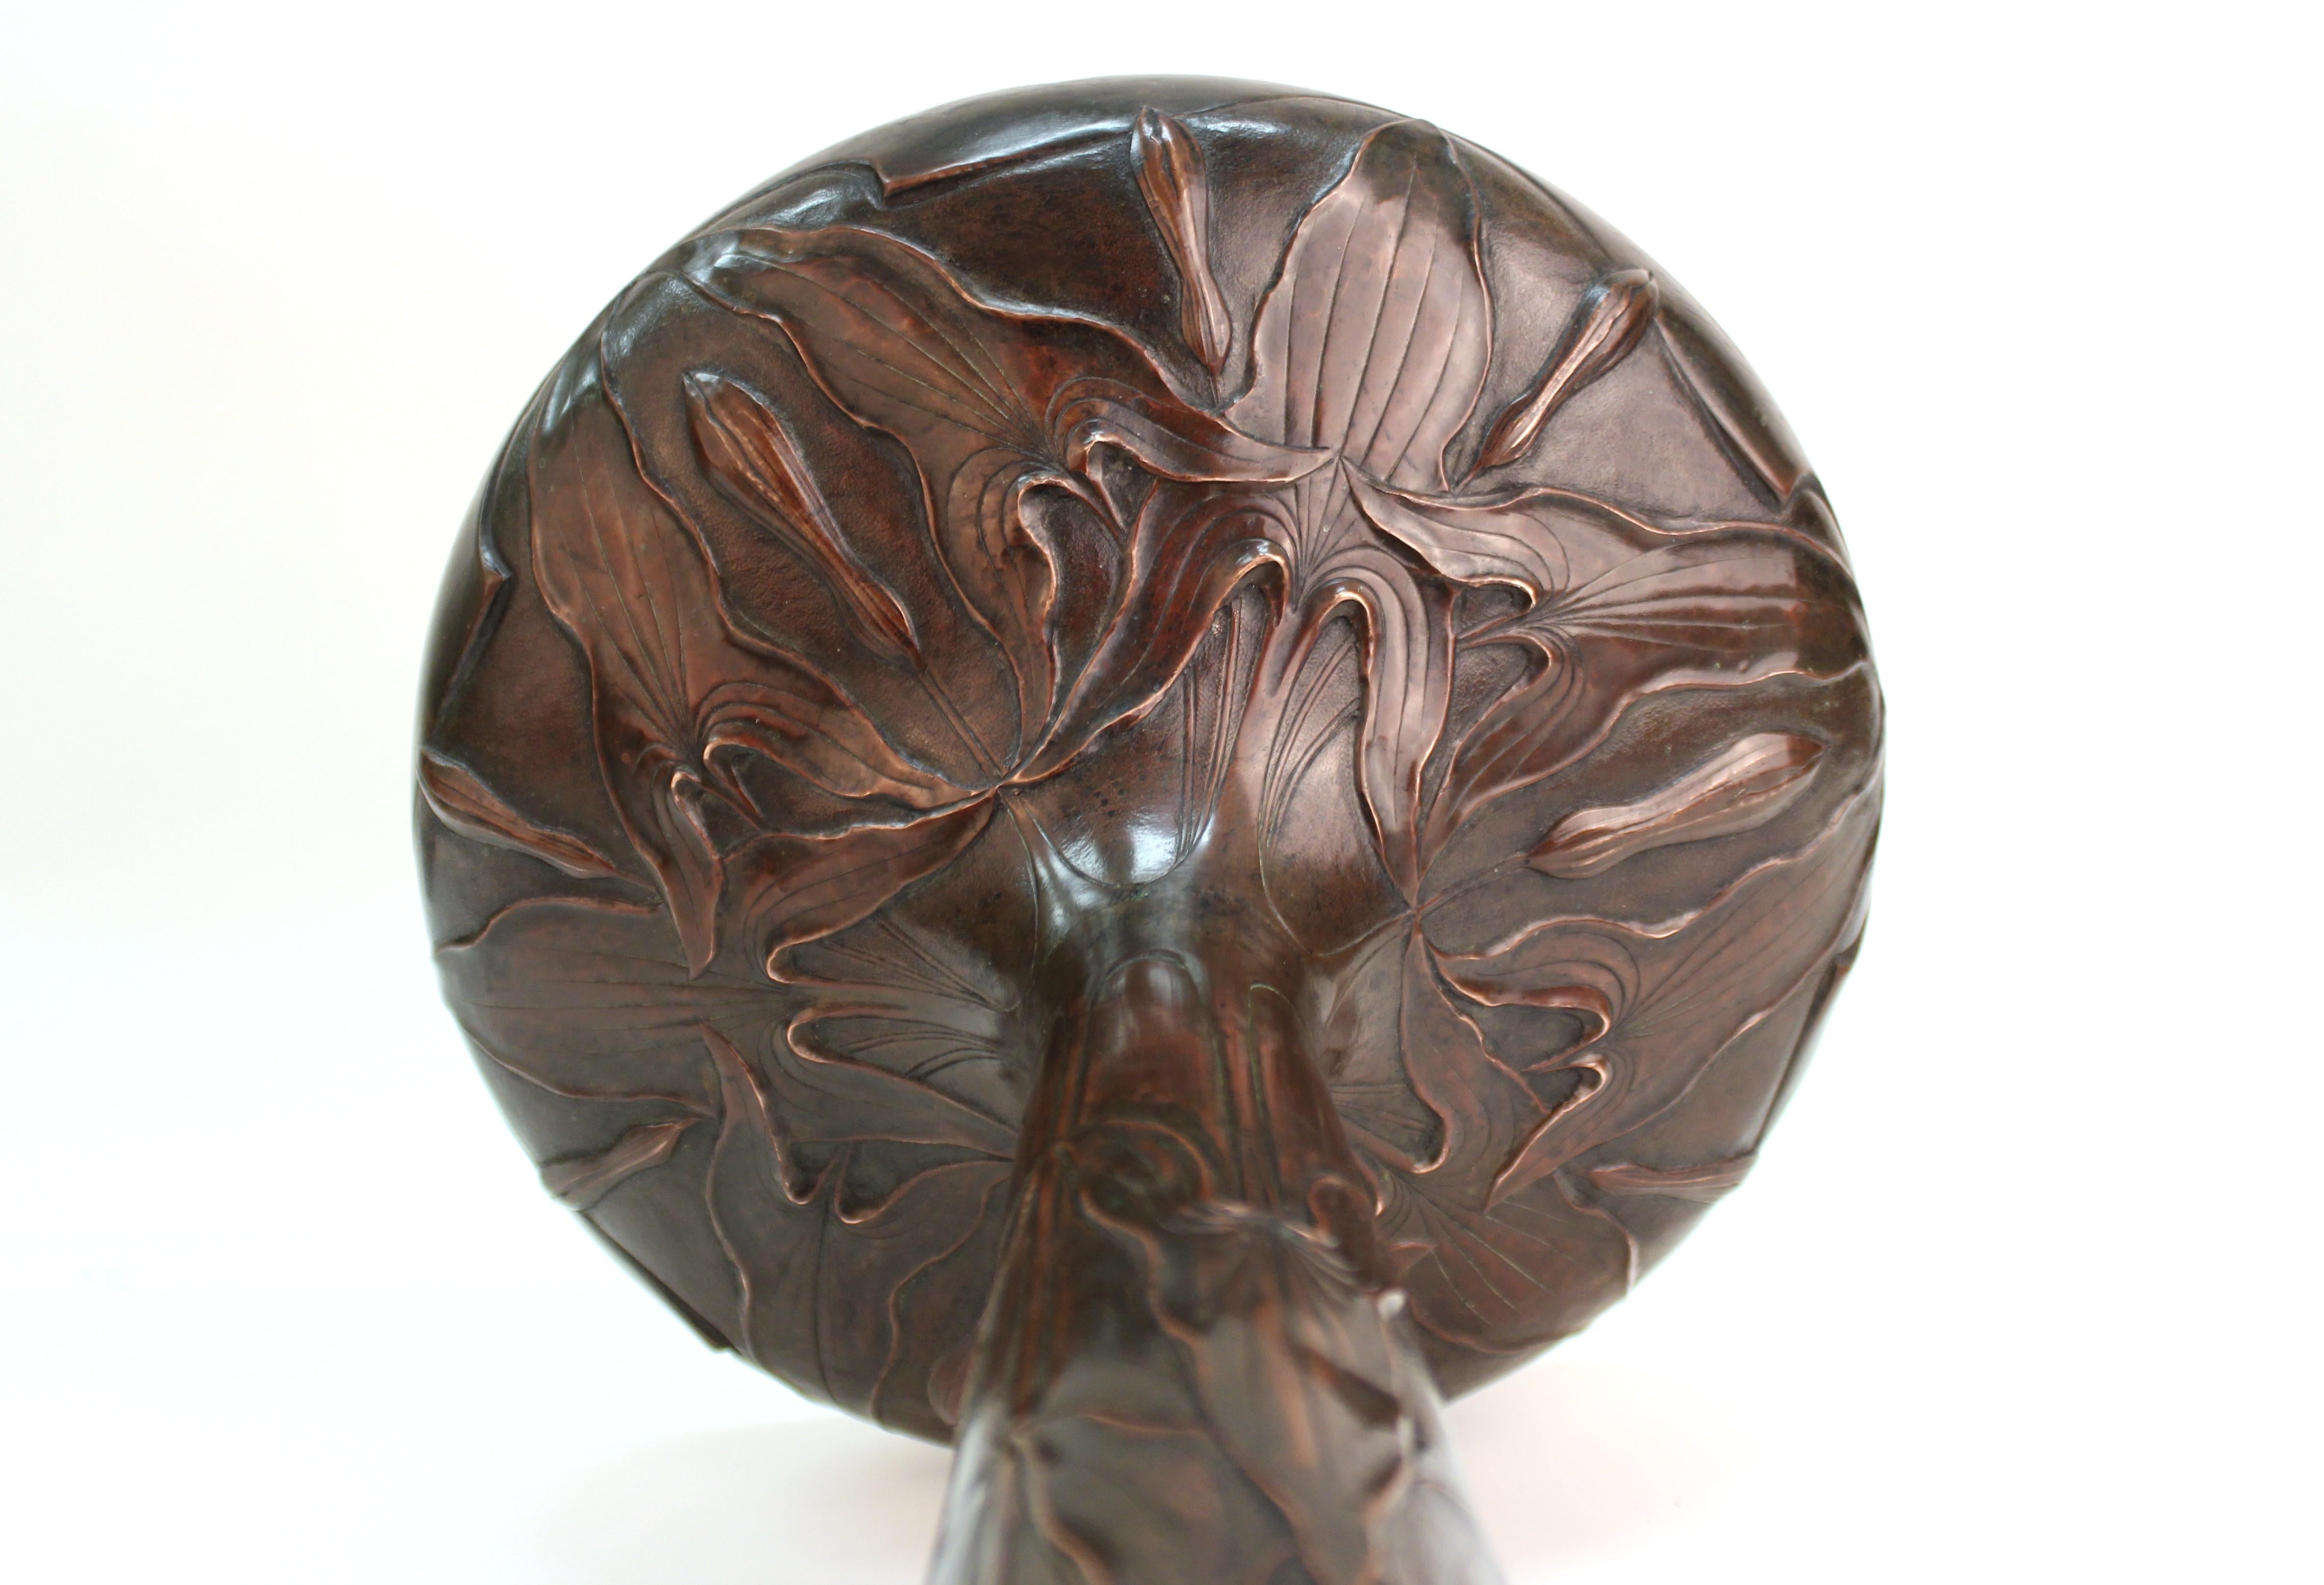 French Art Nouveau Copper Repousse Vase with Leaves Motif 4